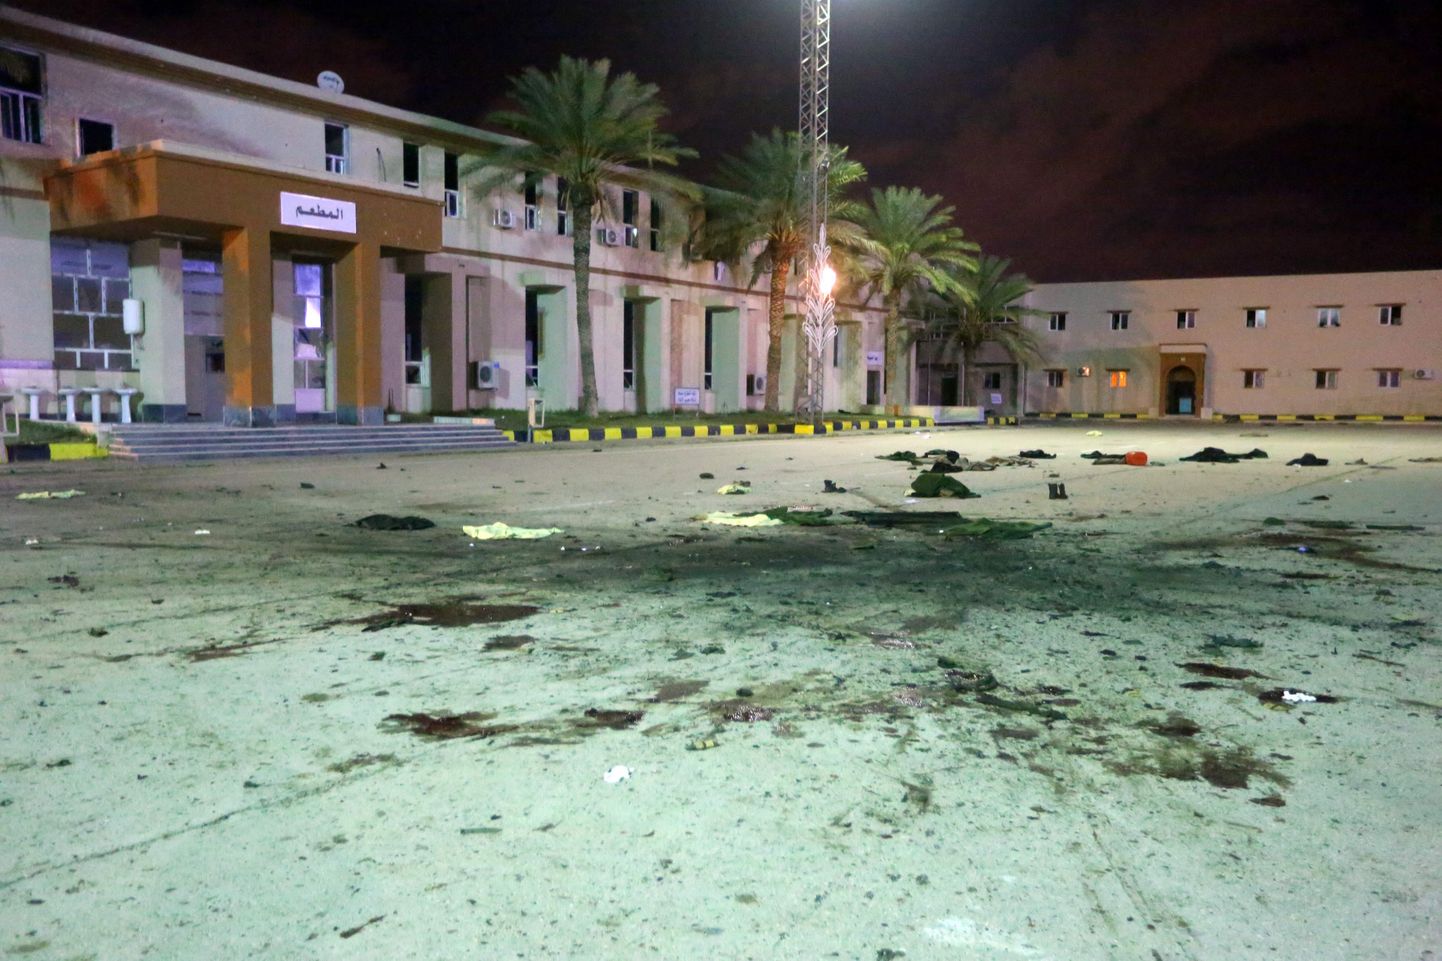 Tripoli sõjakooli esine pärast rünnakut.